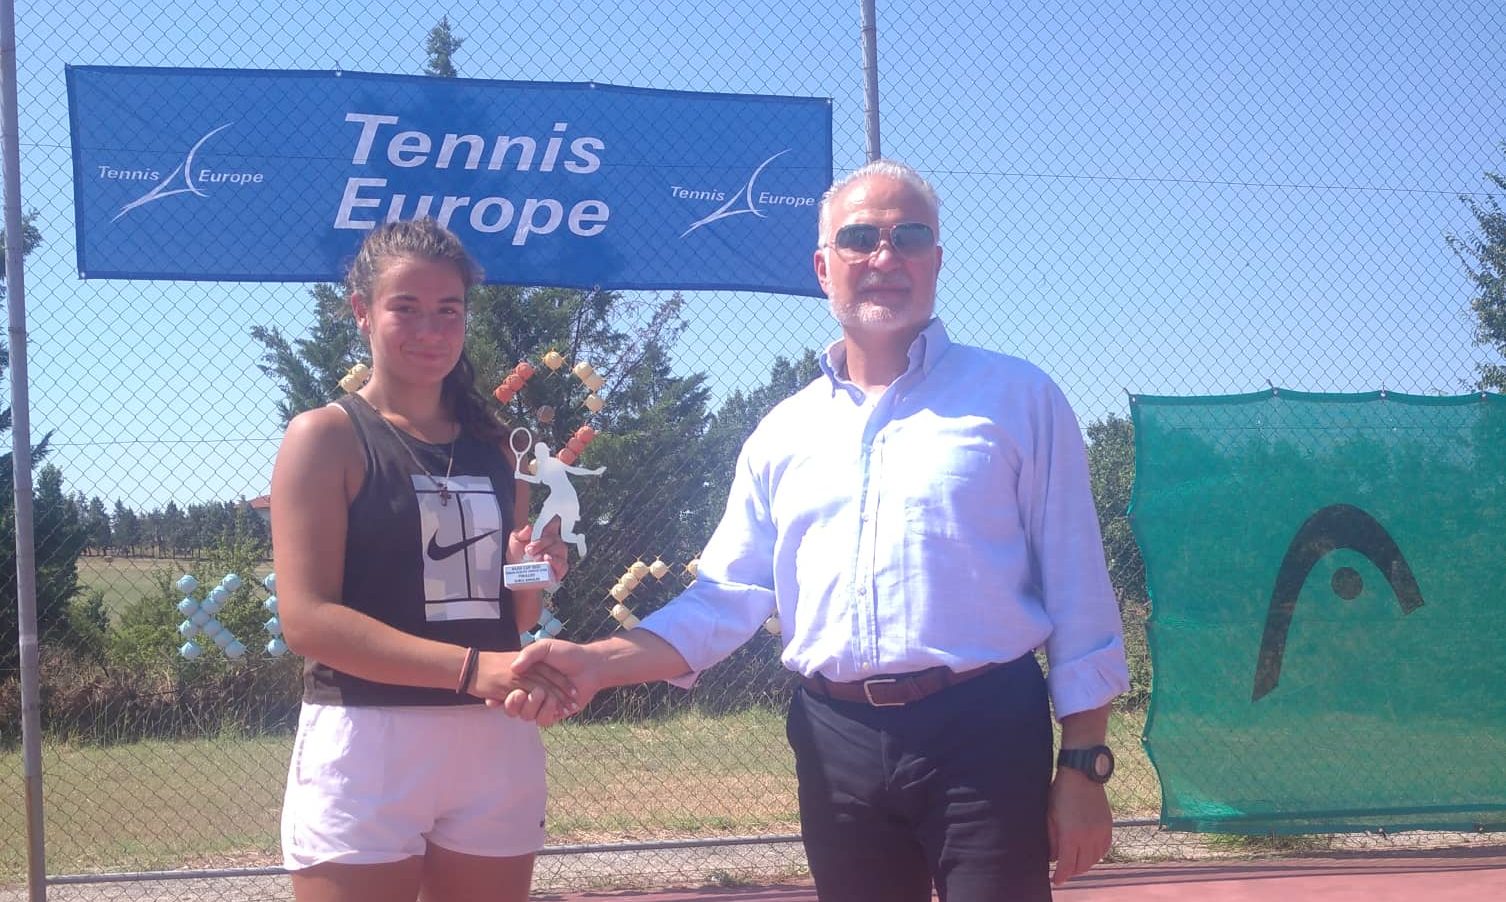 Τένις: Αργυρό μετάλλιο στο Ευρωπαϊκό πρωτάθλημα U16 junior για την Ειρήνη Τσακίρη